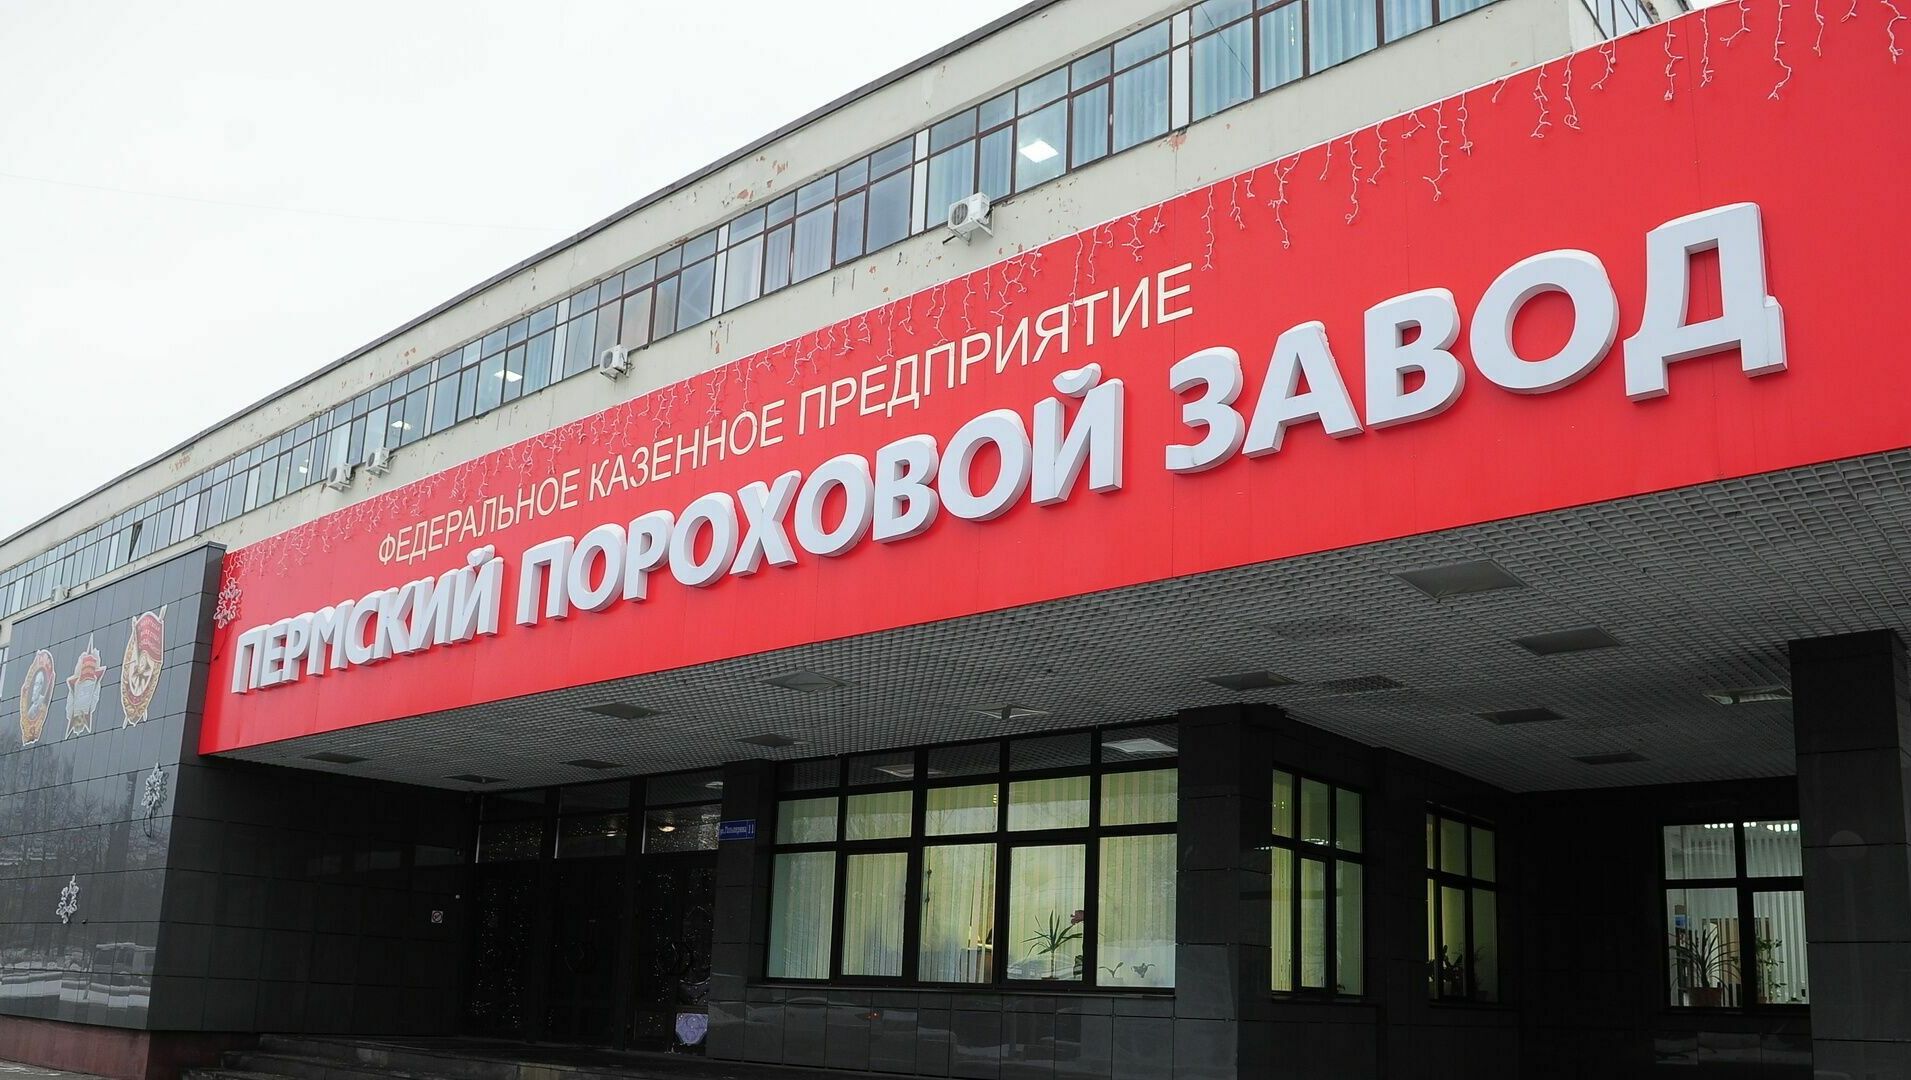 Дочь погибшей сотрудницы Пермского порохового завода отсудила 4 миллиона рублей